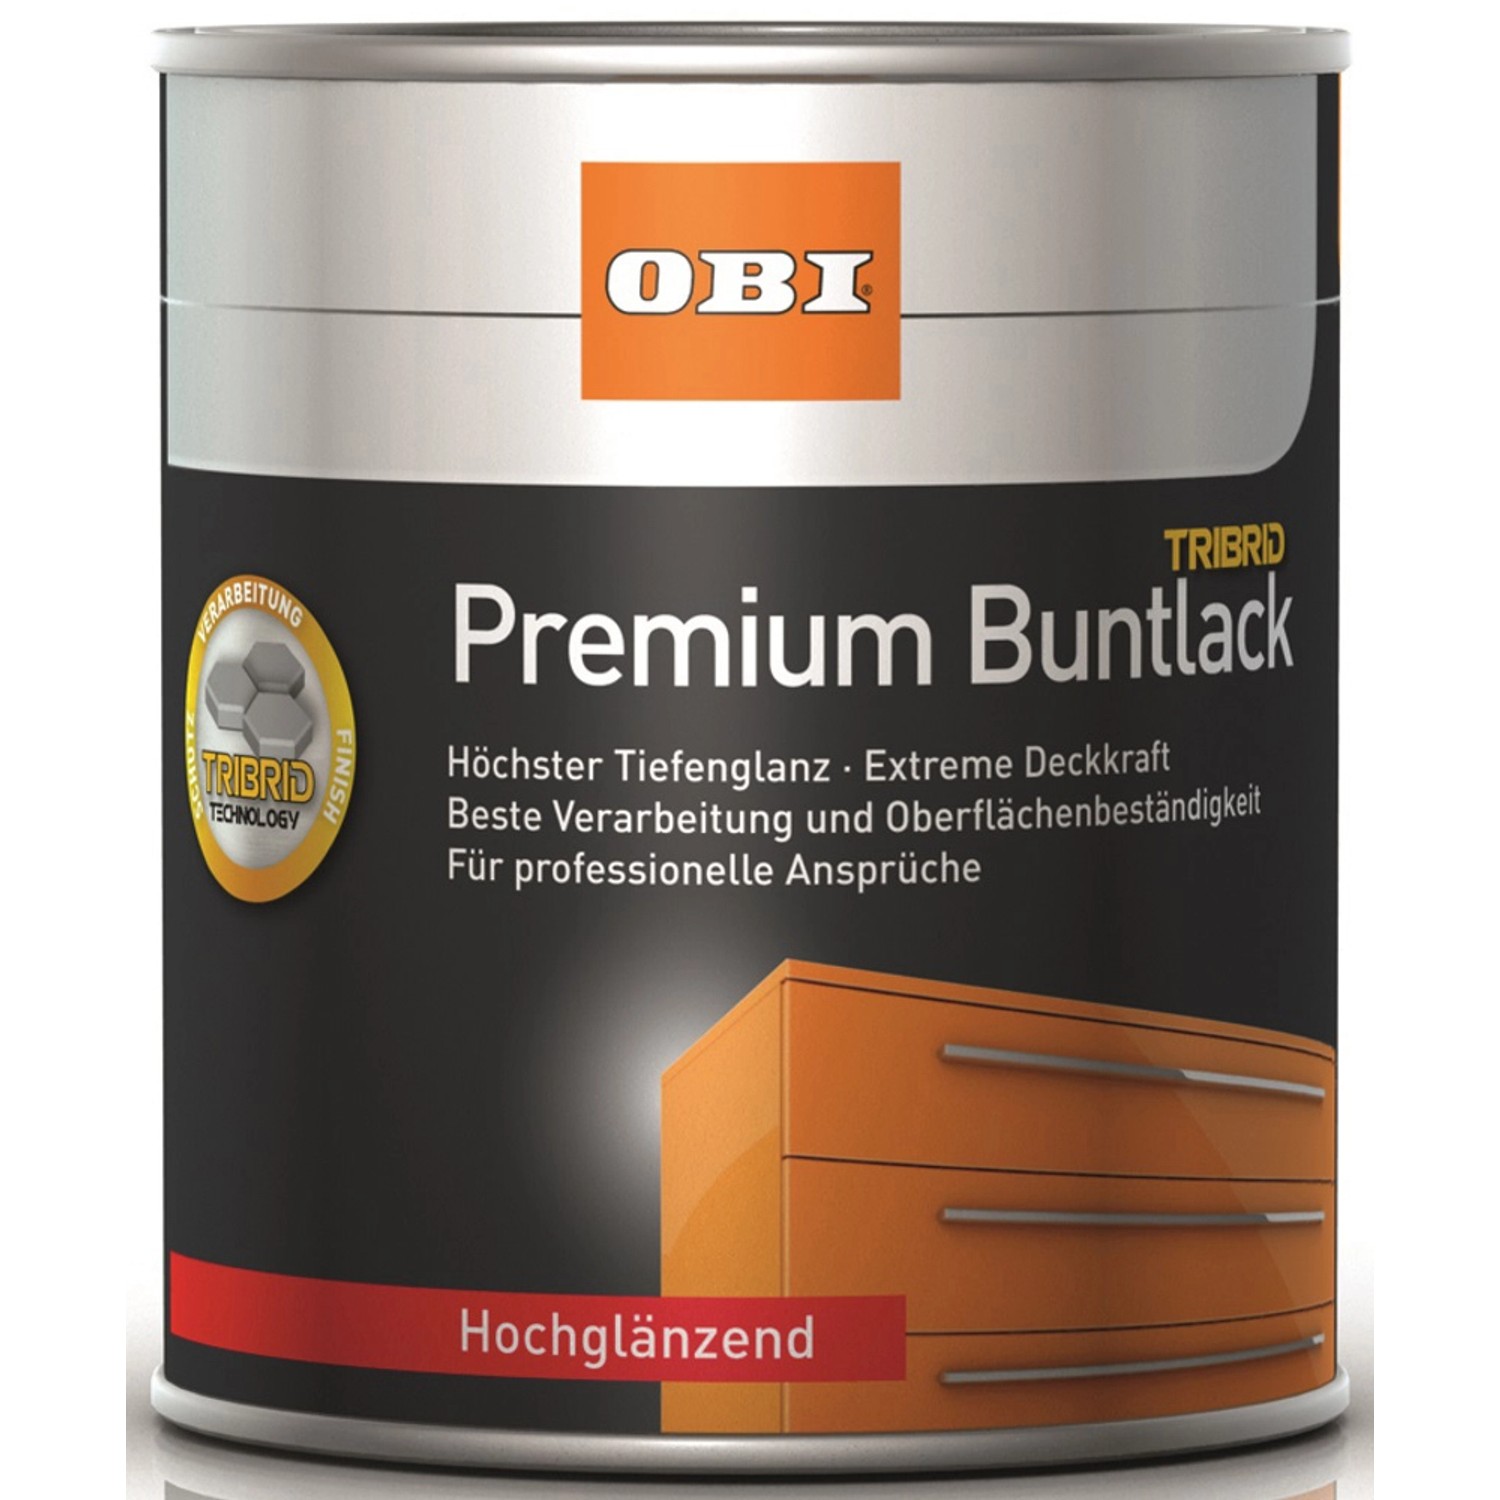 OBI Premium Buntlack Tribrid Tiefschwarz hochglänzend 750 ml